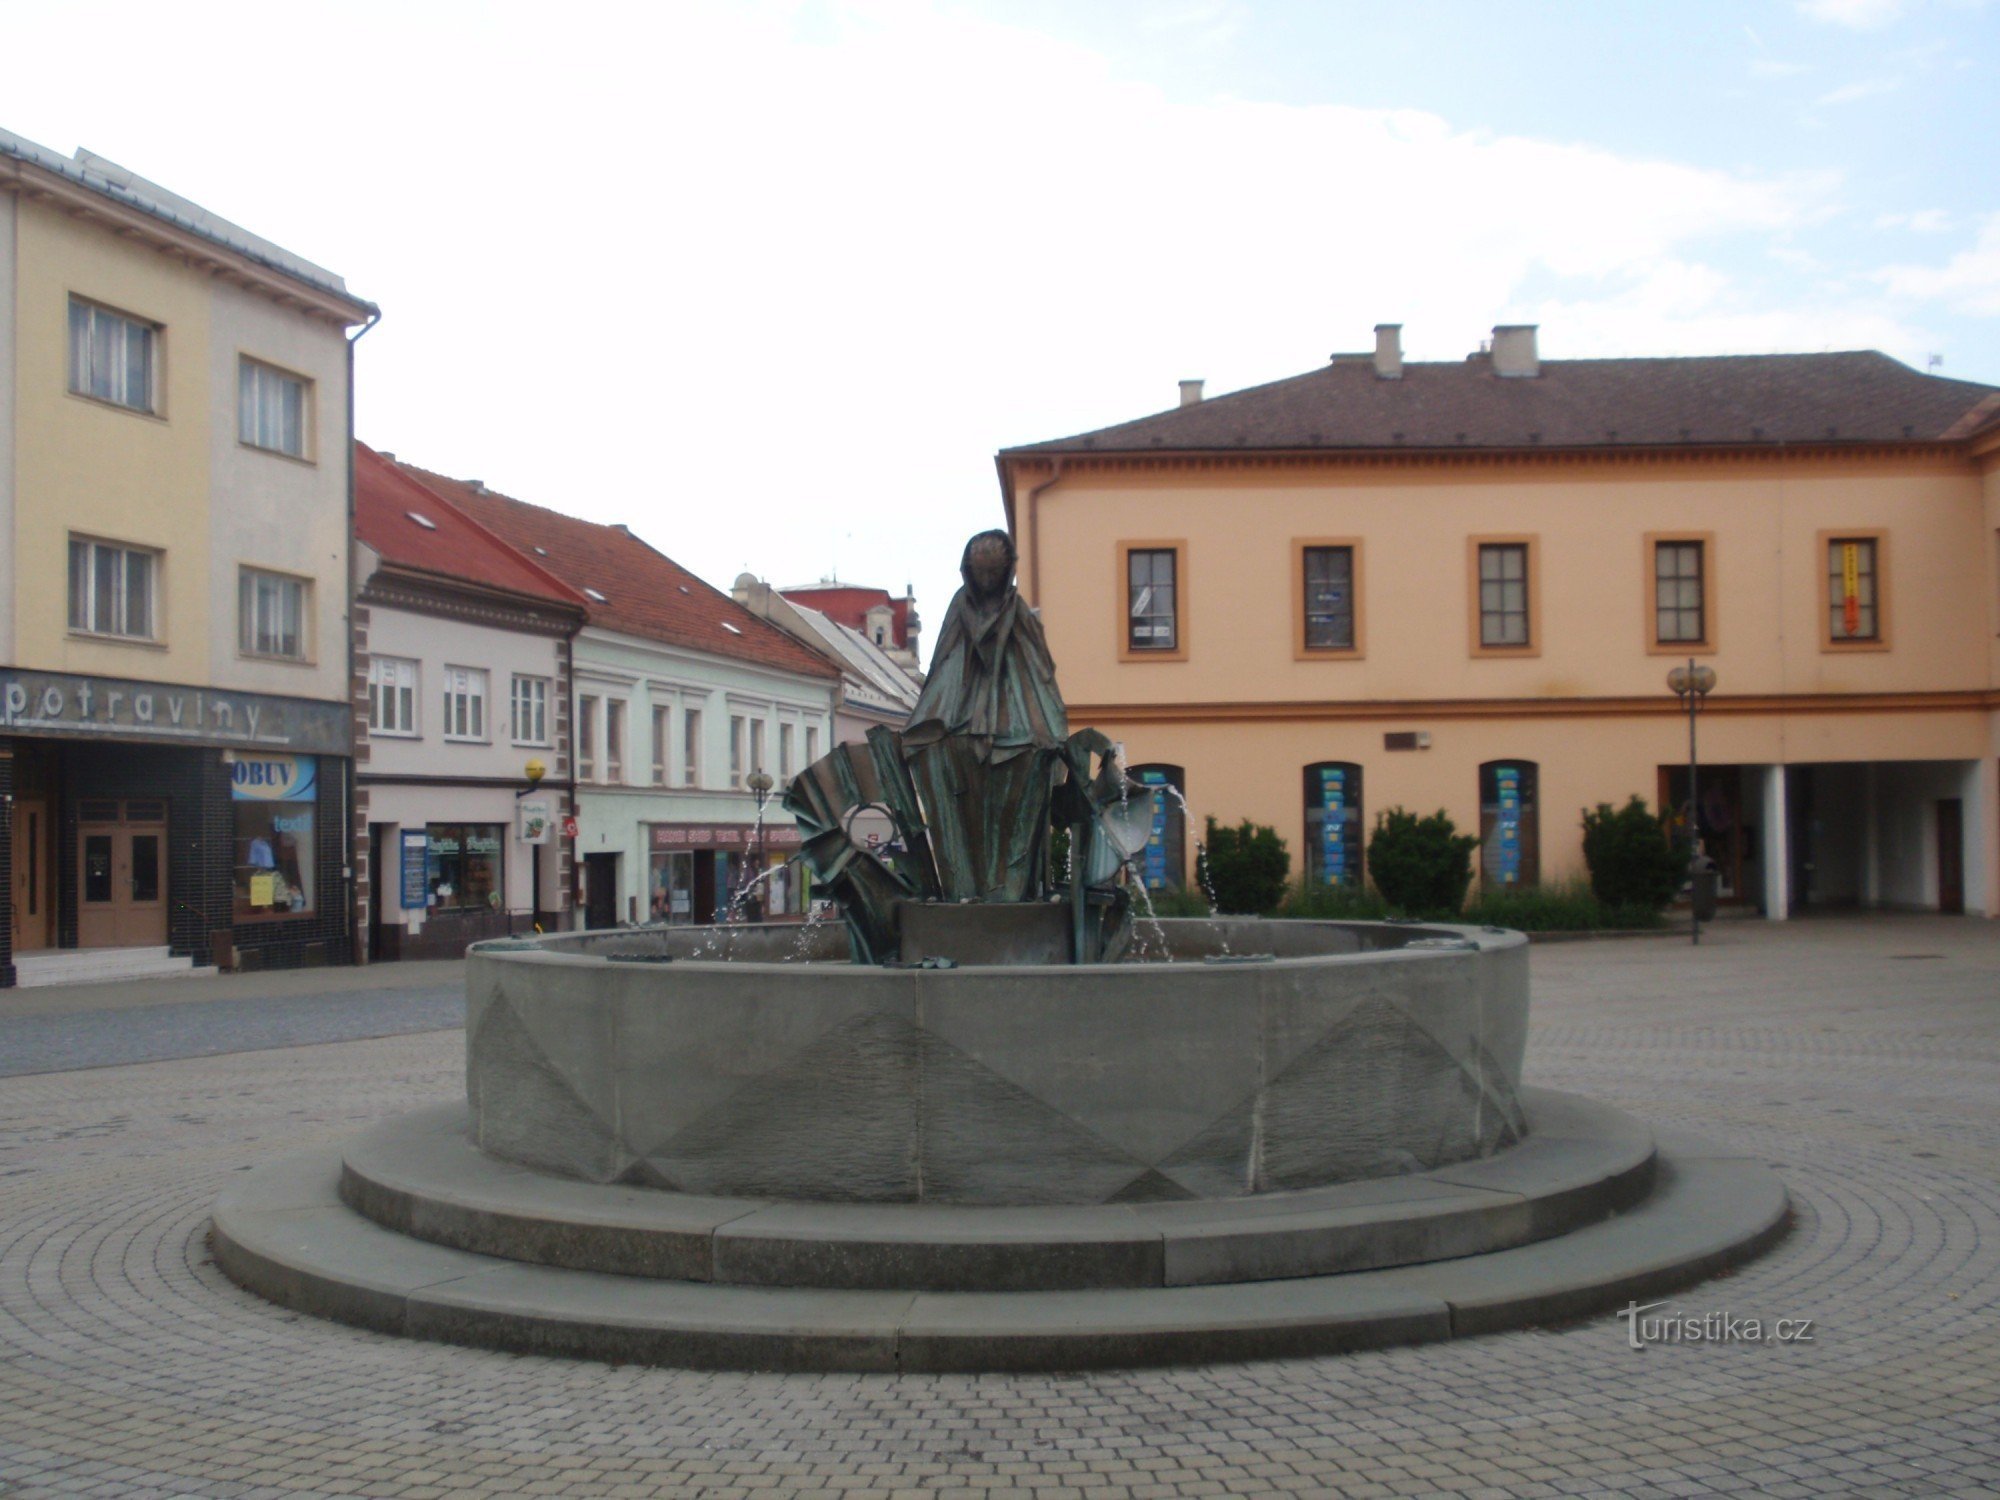 Bystřice pod Hostýnem - små monument och attraktioner